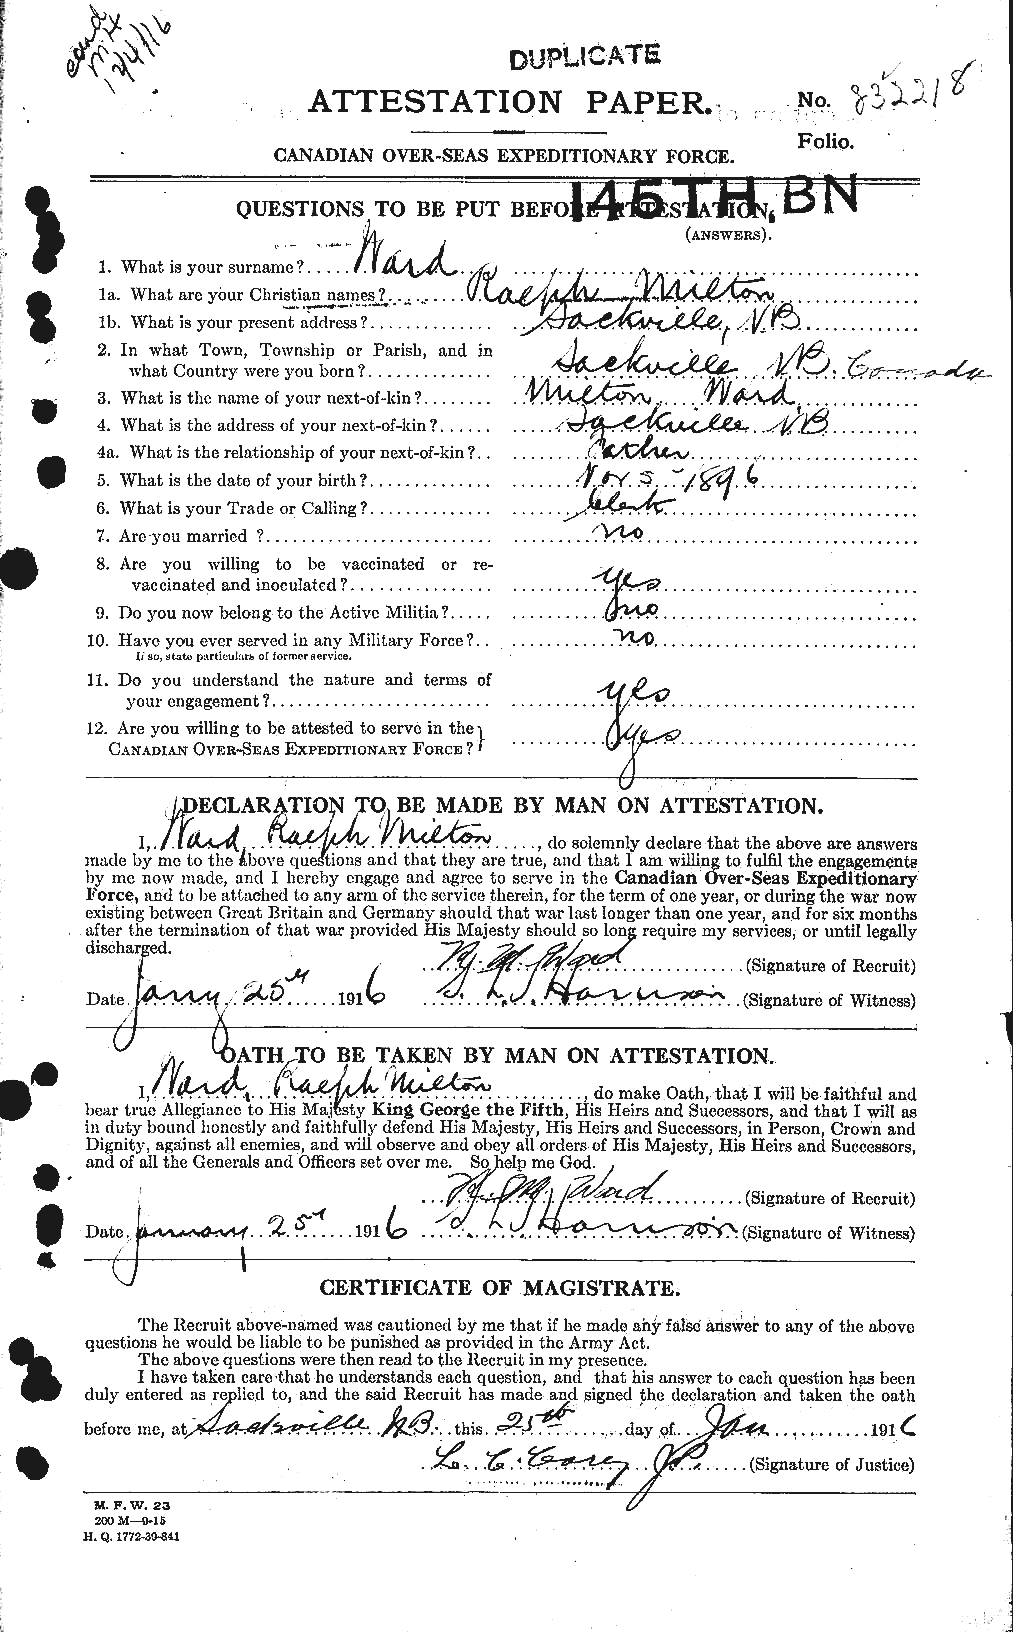 Dossiers du Personnel de la Première Guerre mondiale - CEC 659634a